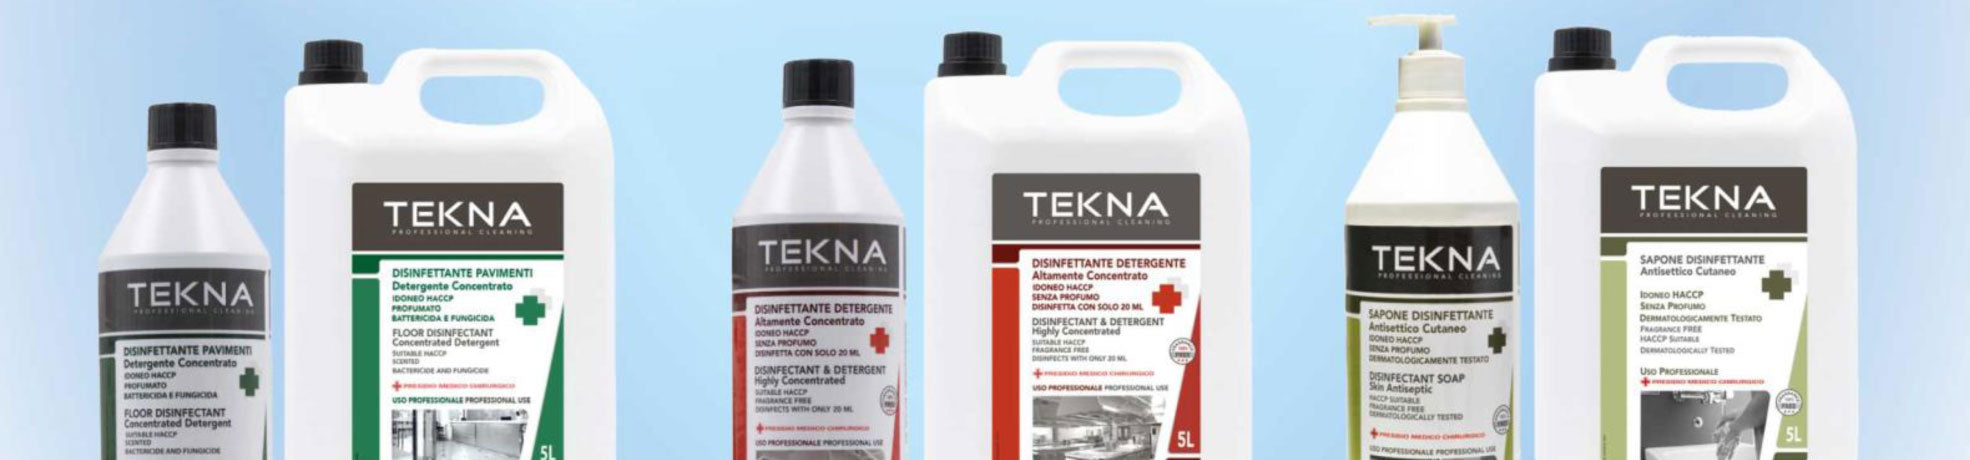 Pulizia professionale con i prodotti Tekna